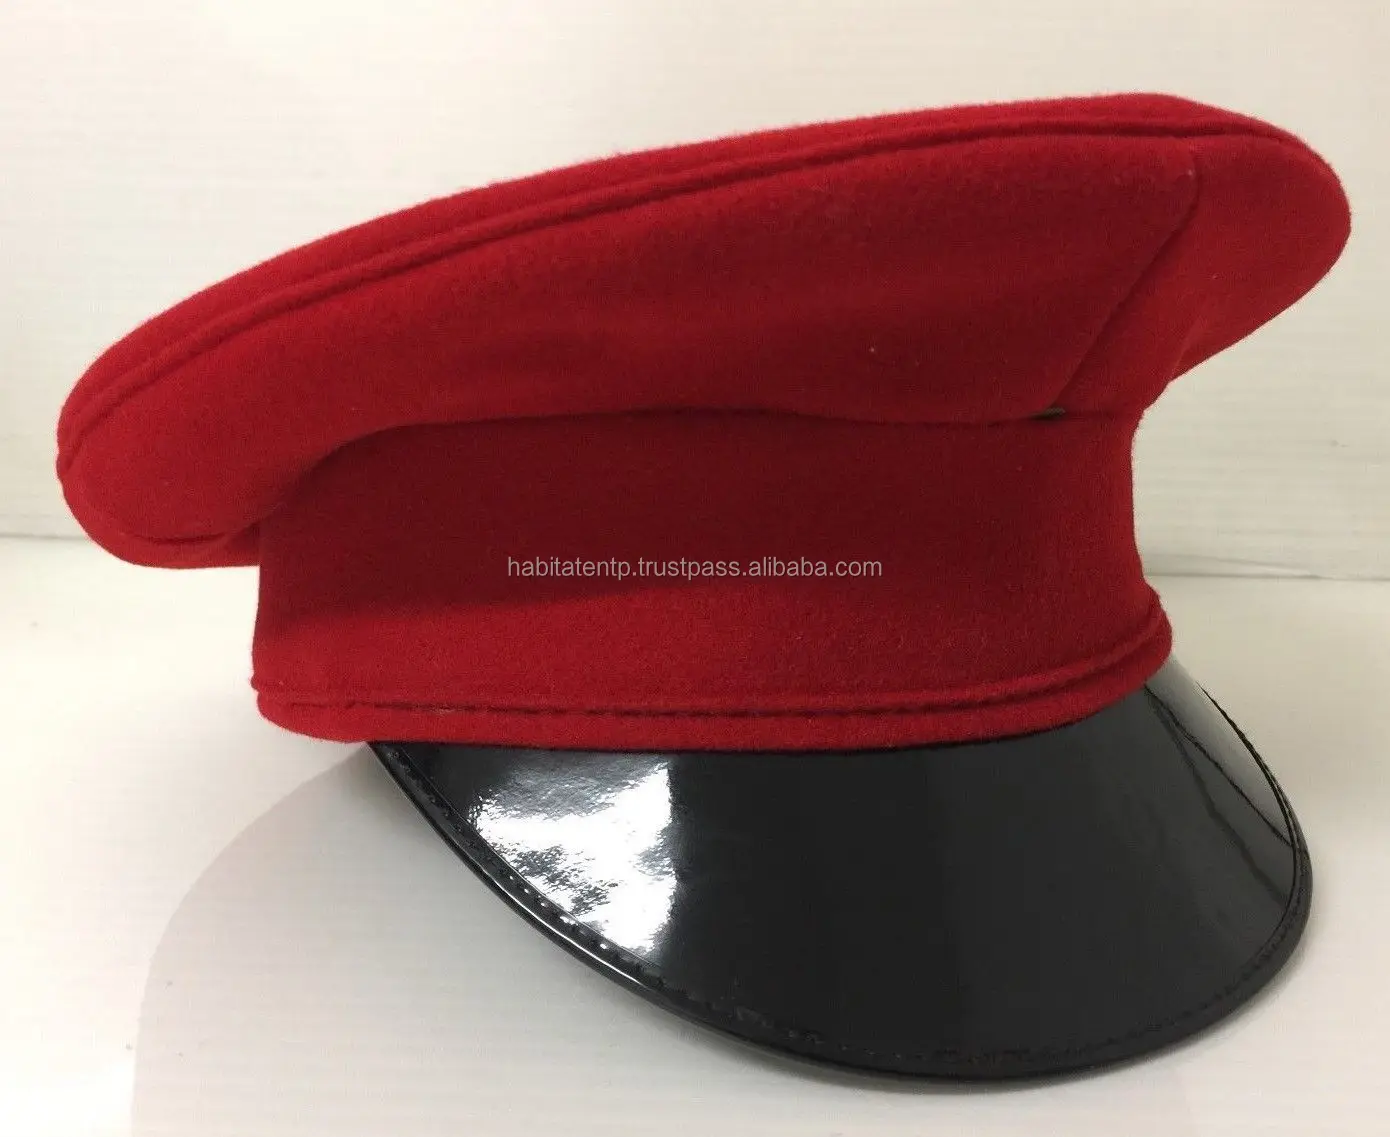 red peaked cap